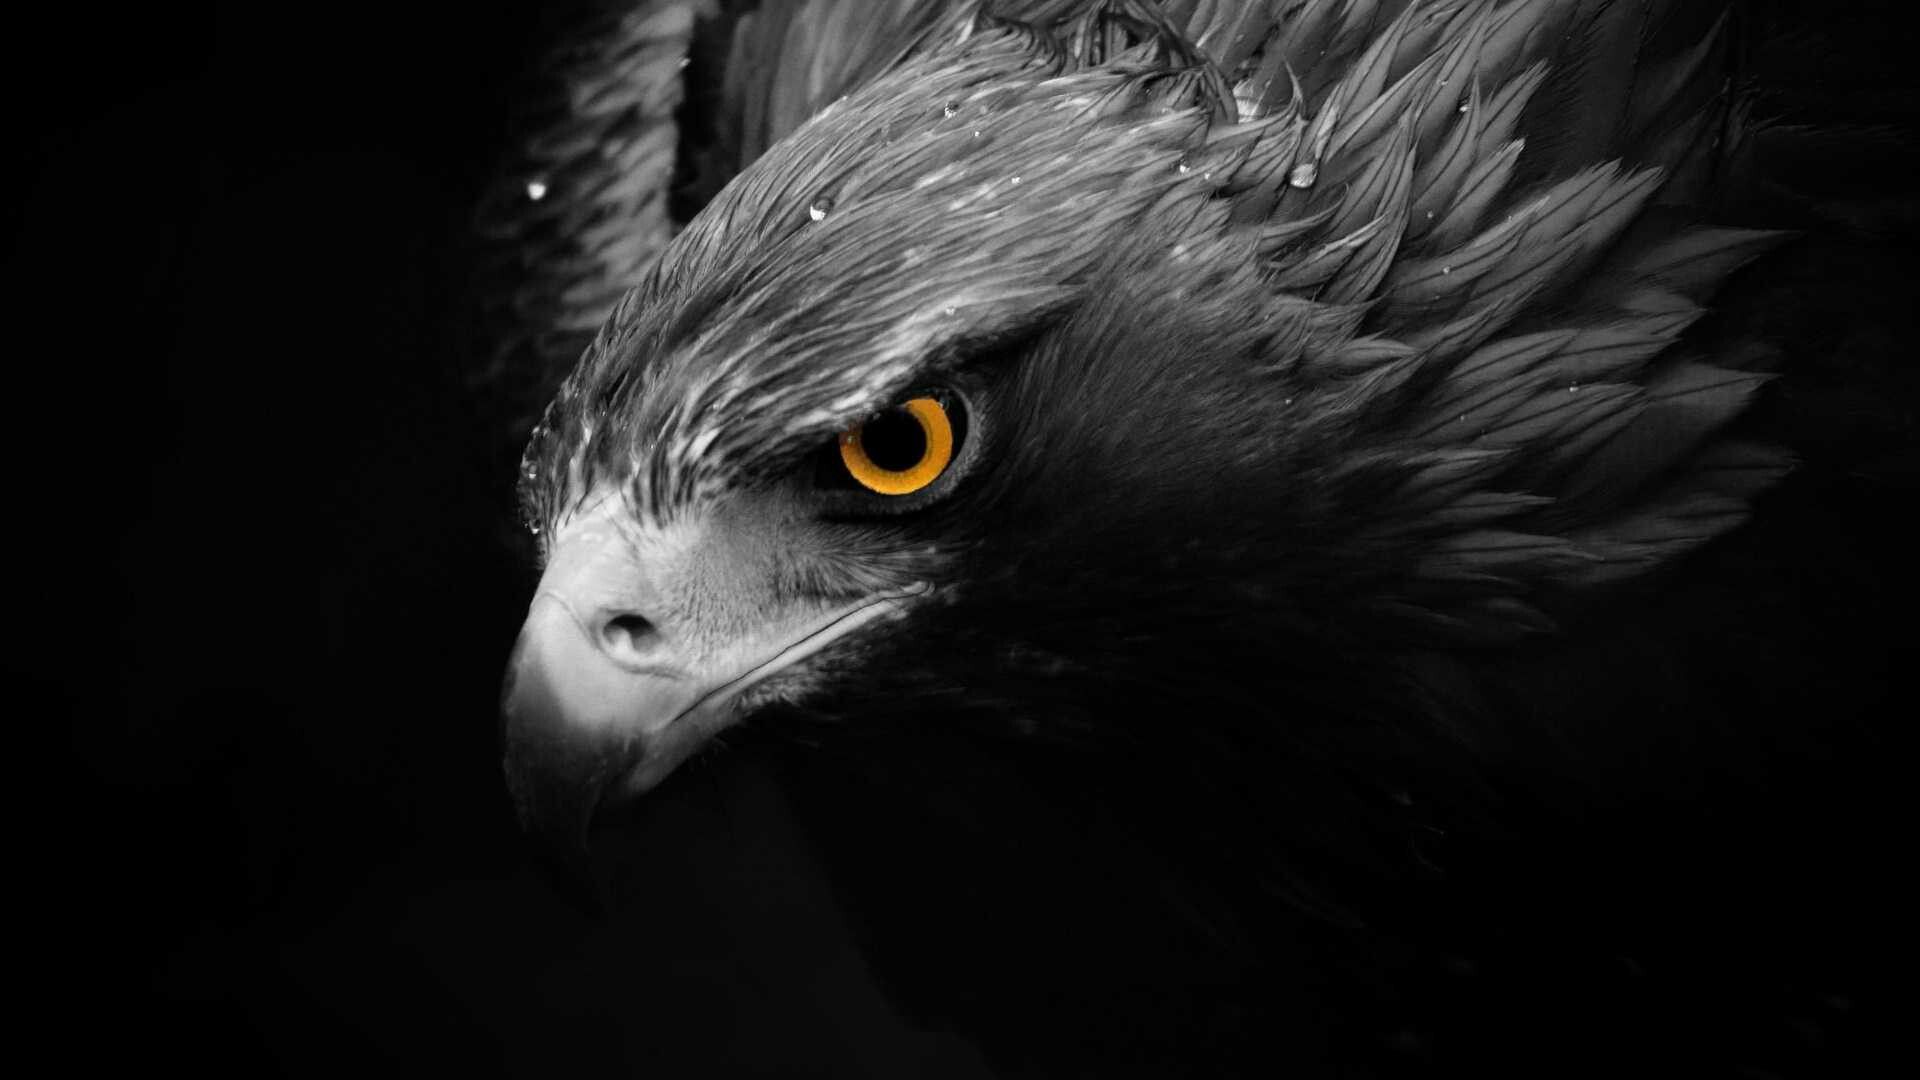 Black Eagle. Eagle wallpaper, Black eagle, Eagle